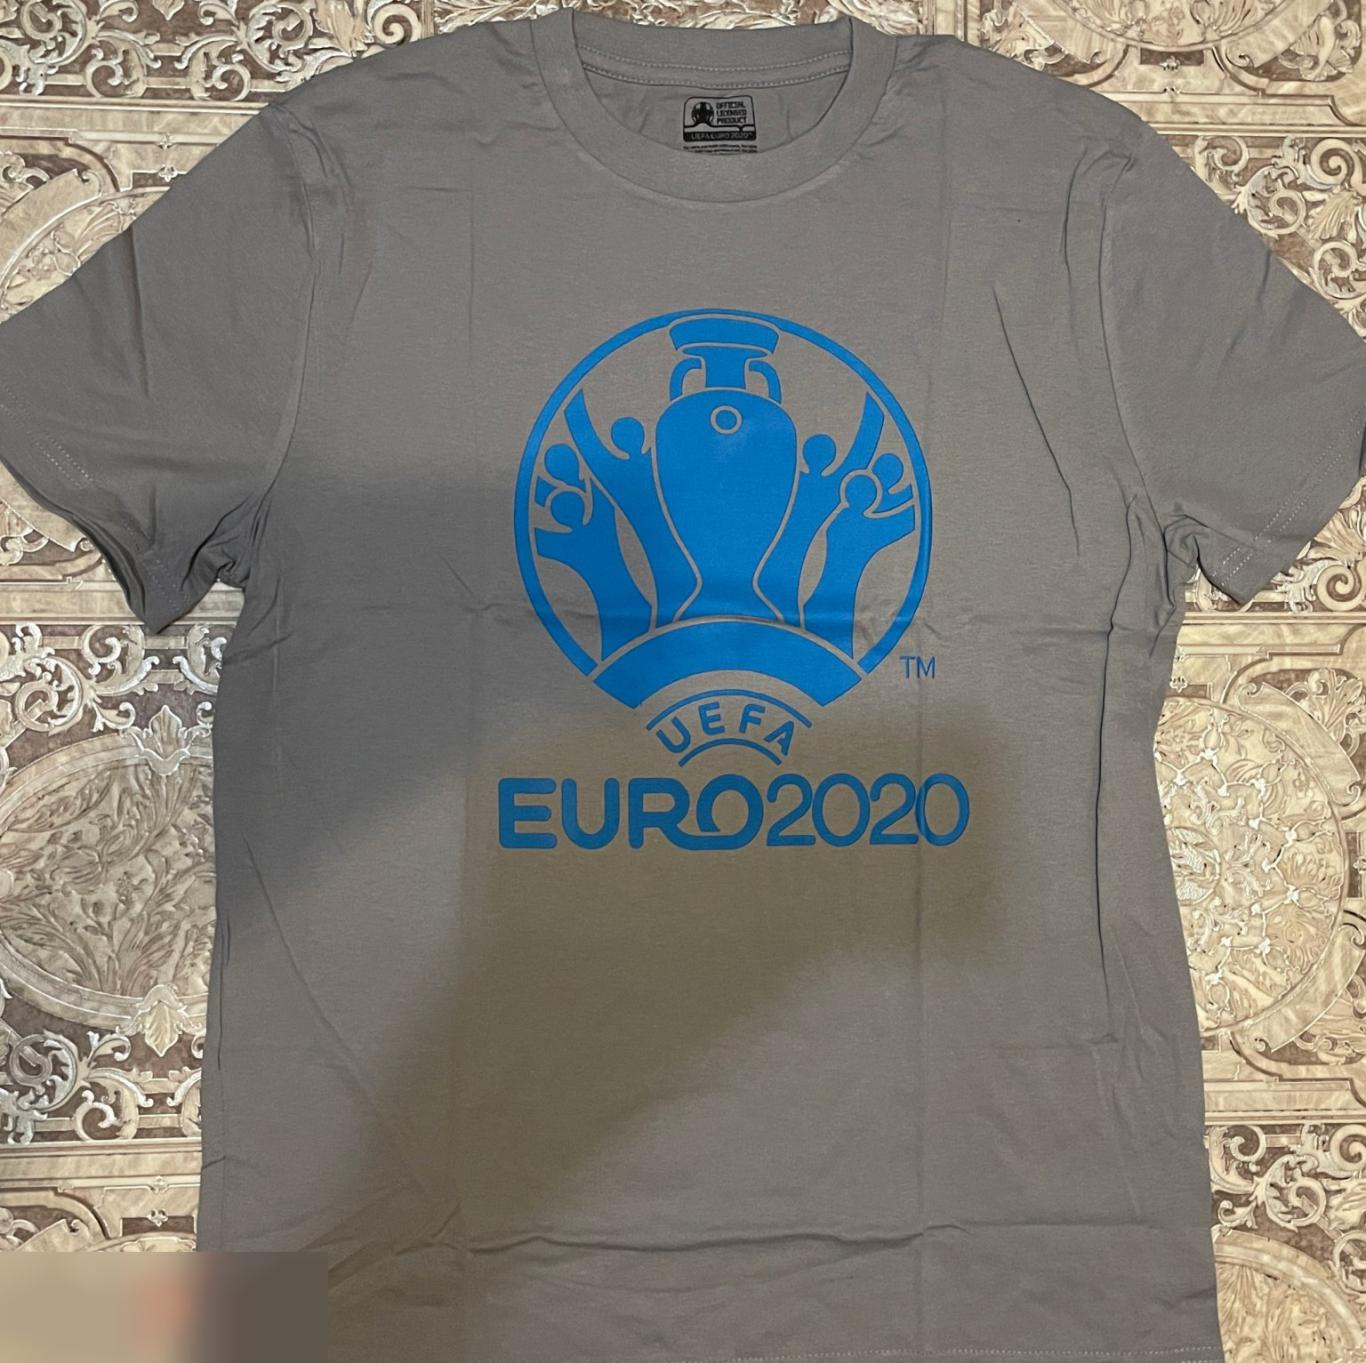 ОПТОВЫЙ ЛОТ! 100 мужских футболок ЕВРО 2020 (S, M). 2